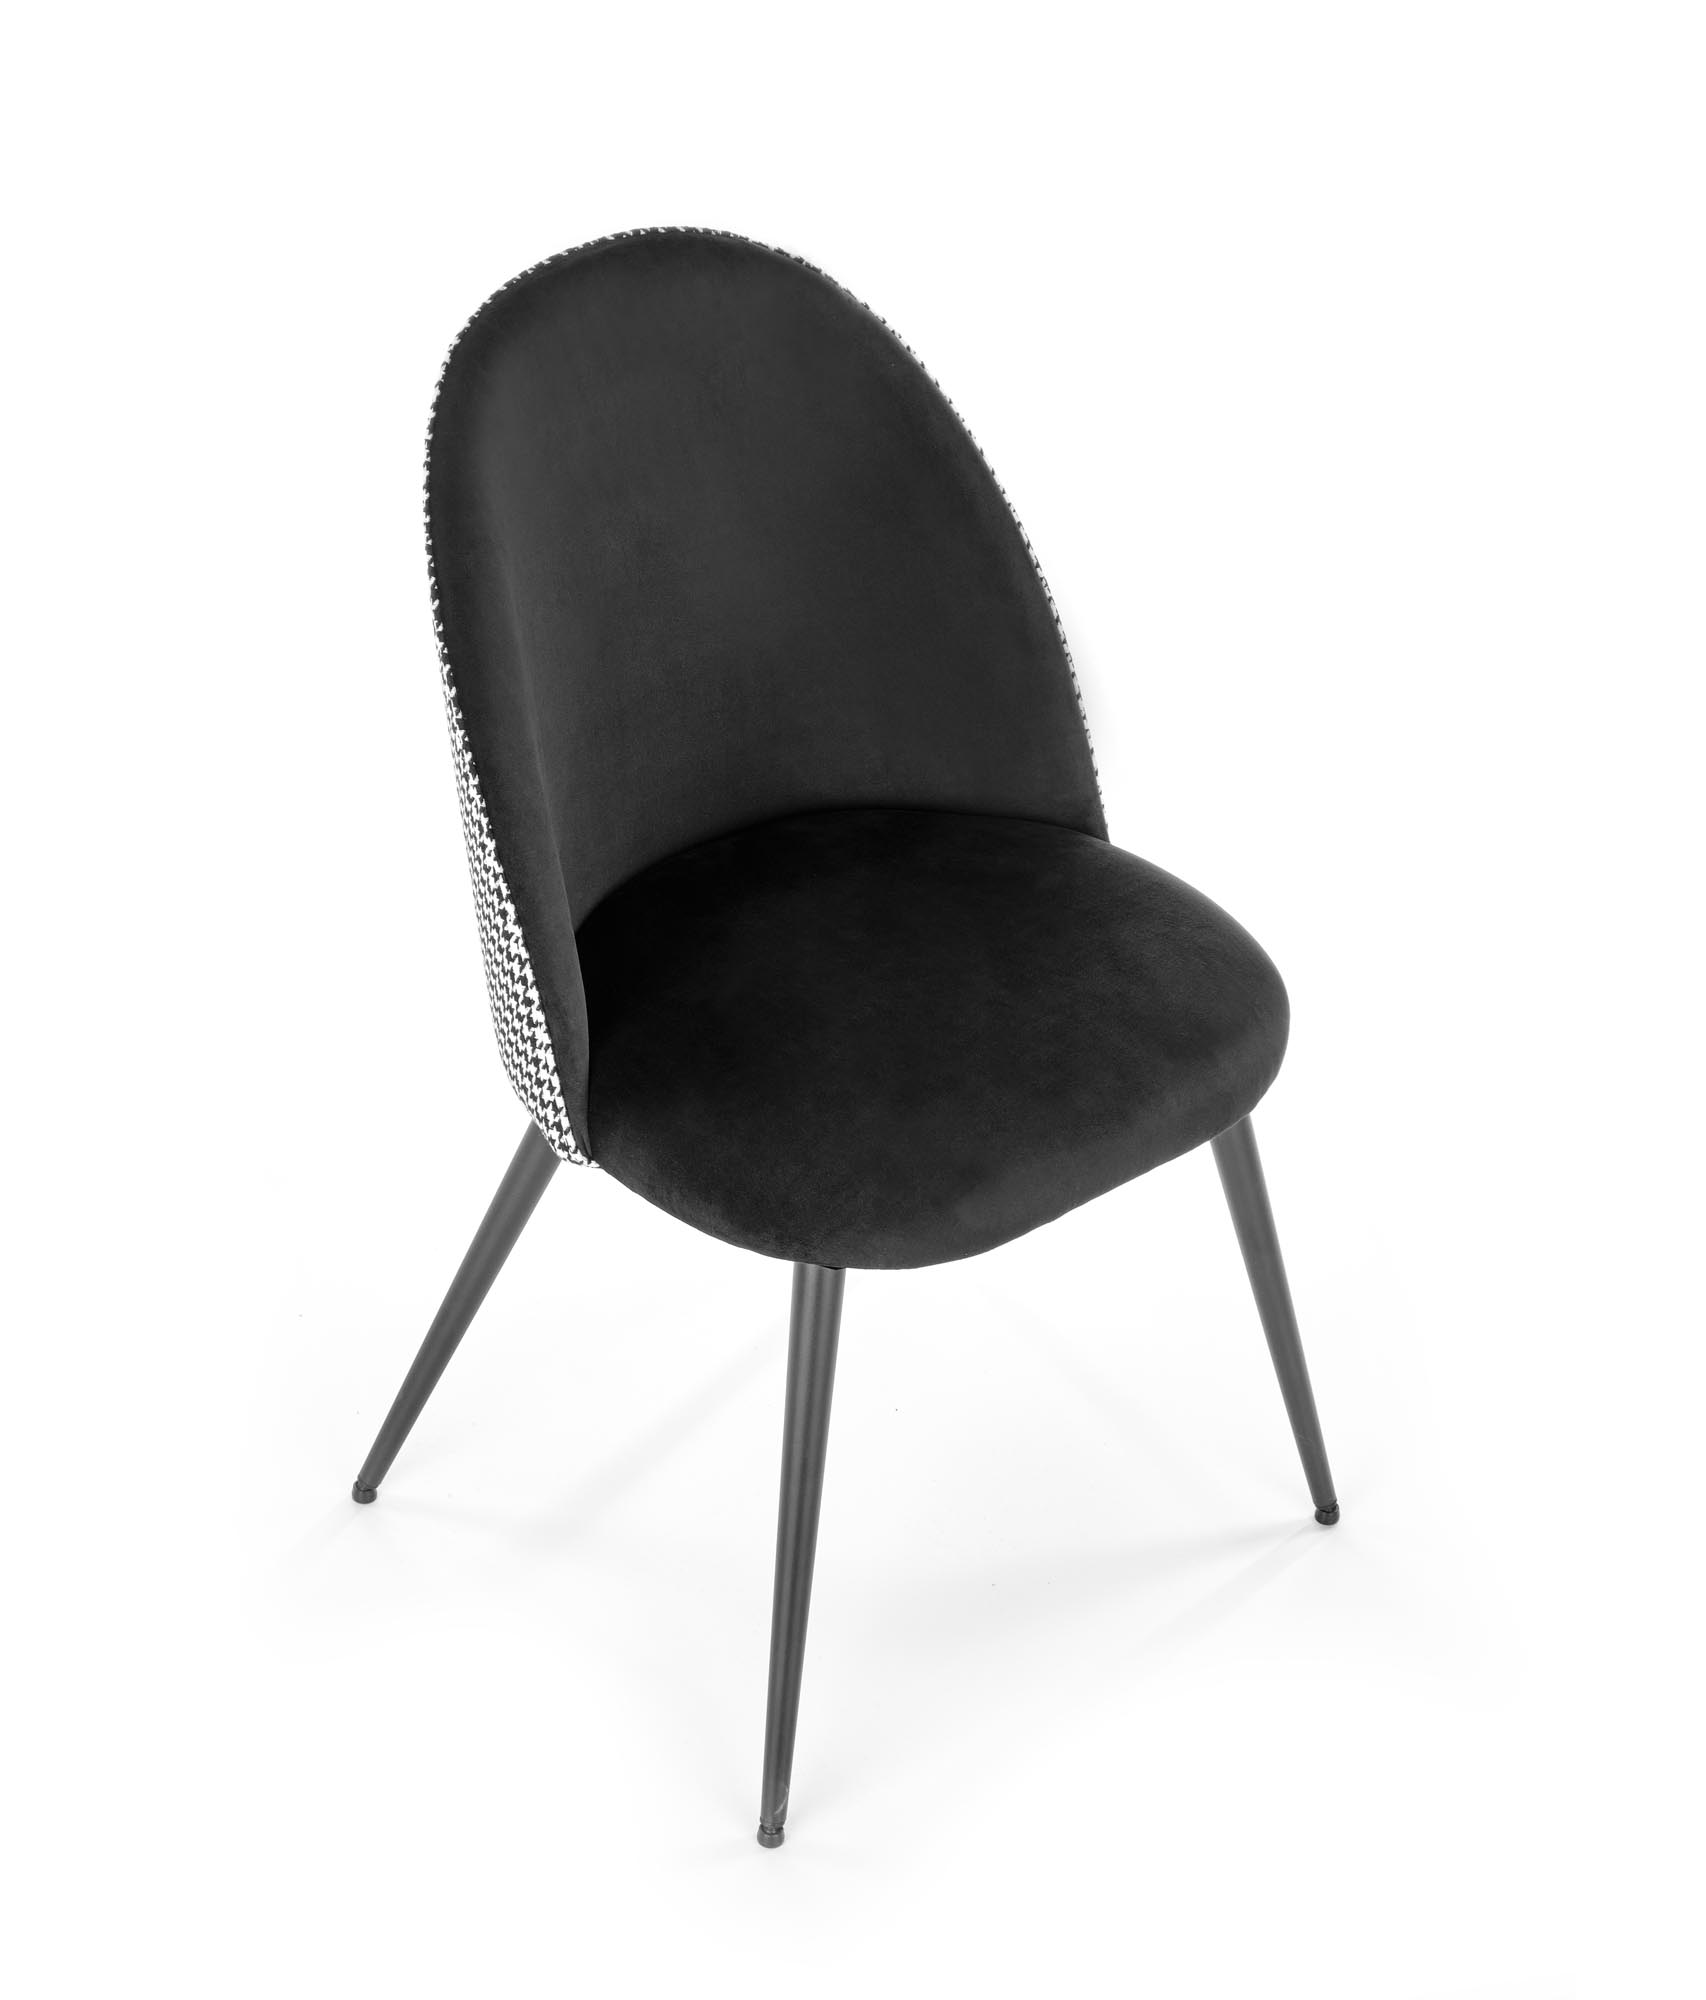 K478 krzesło czarny - biały k478 krzesło czarny - biały